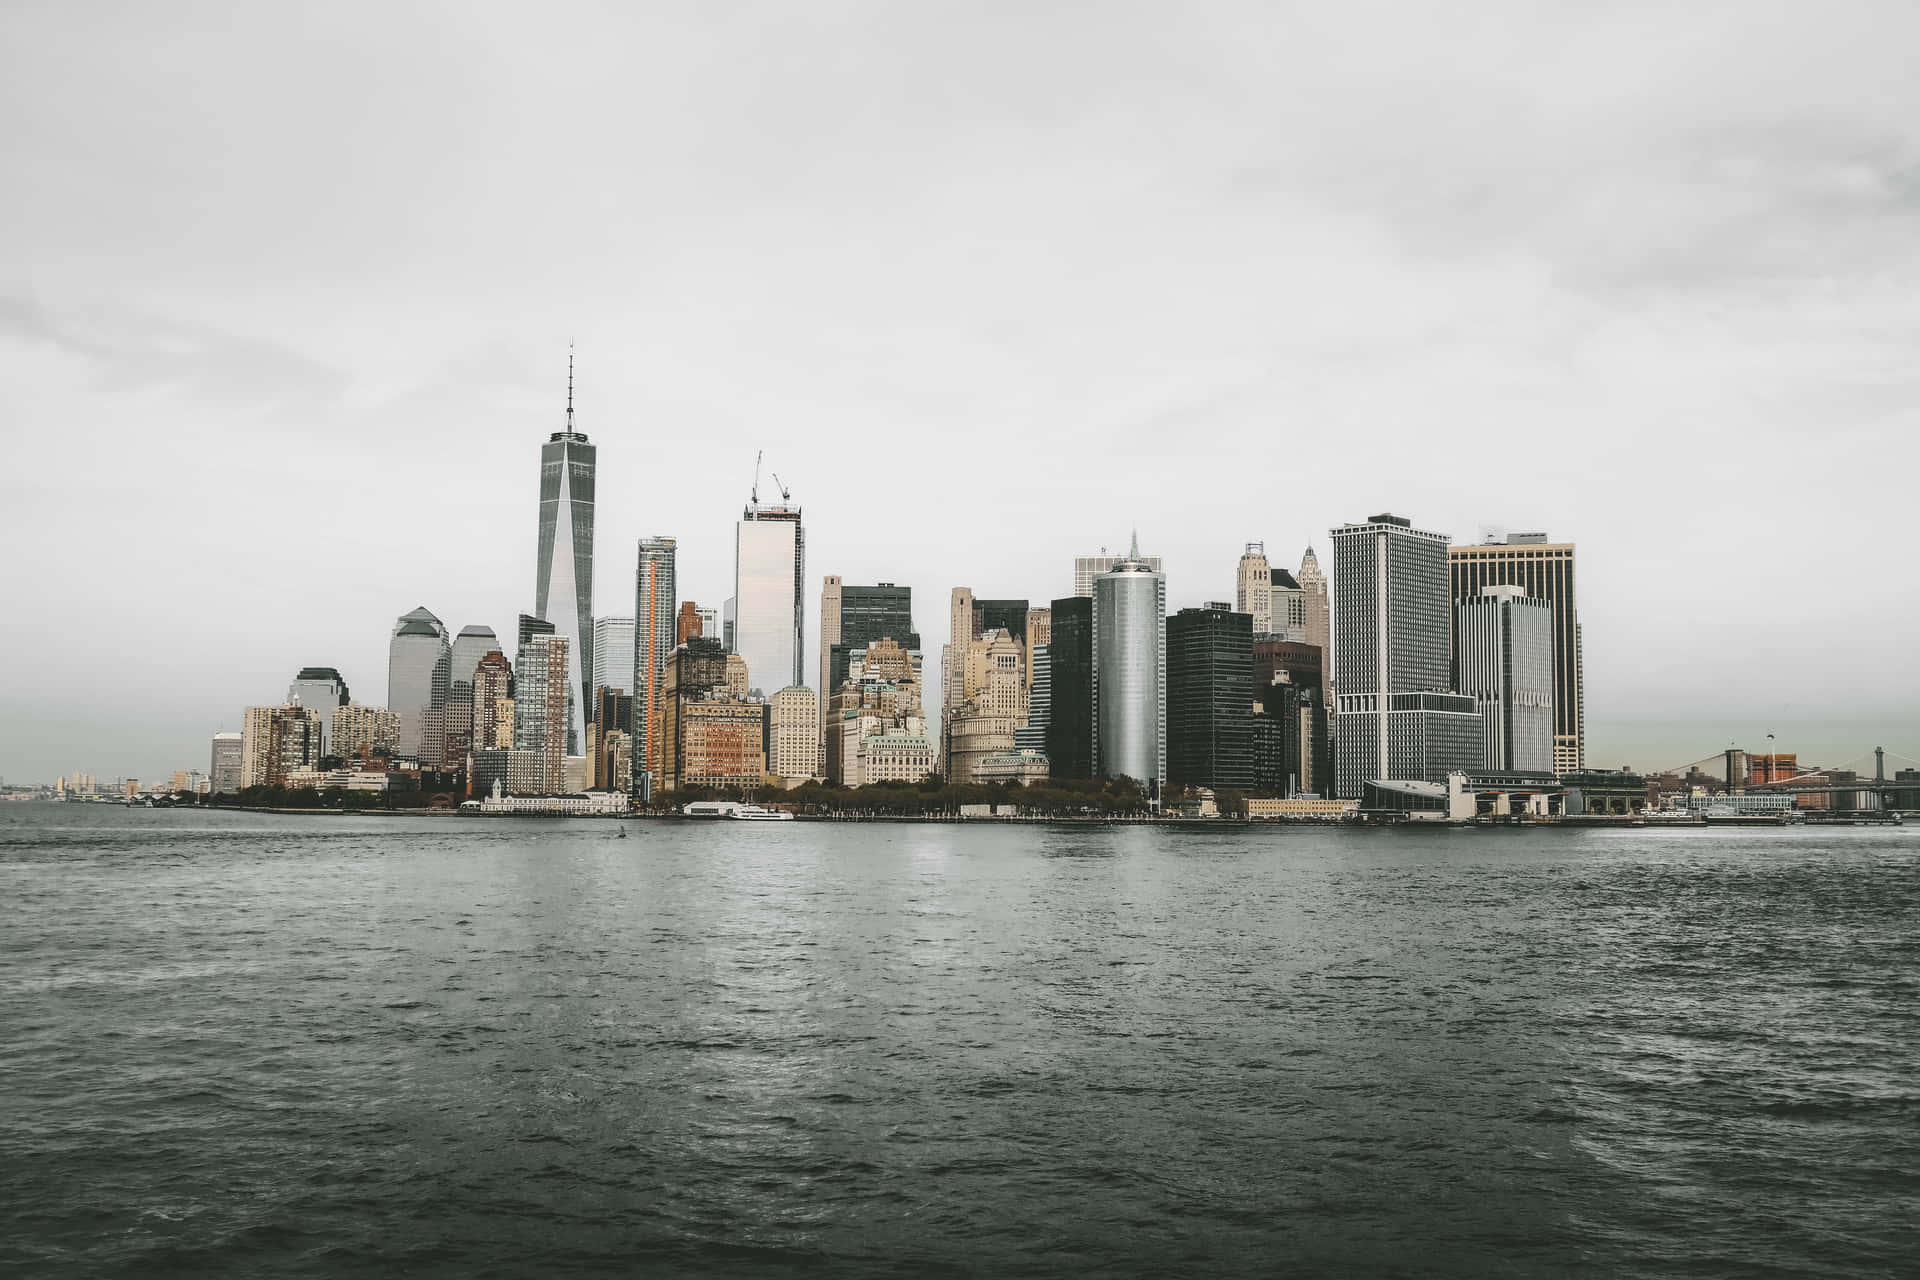 Aussichtauf Den Hudson River - Bester Hintergrundbildschirm Für New York.